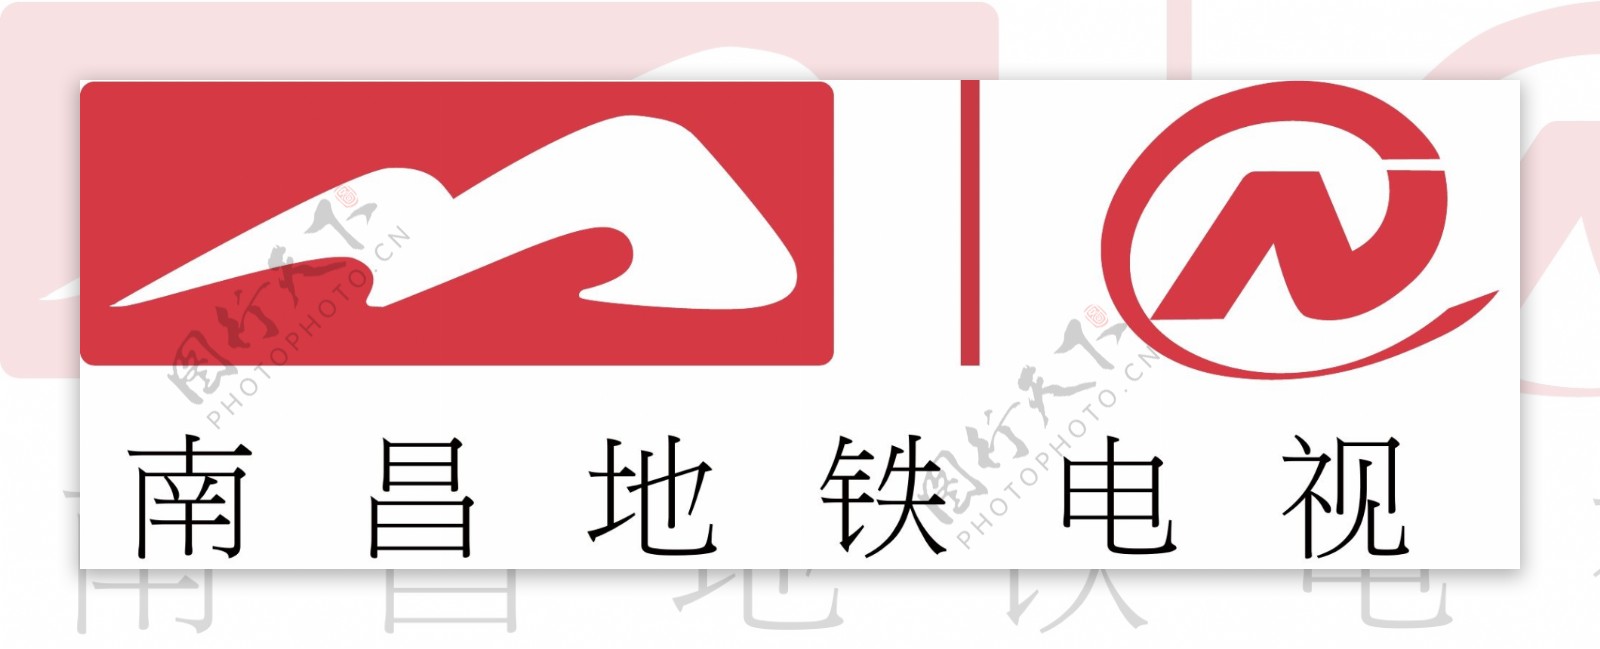 南昌地铁电视logo